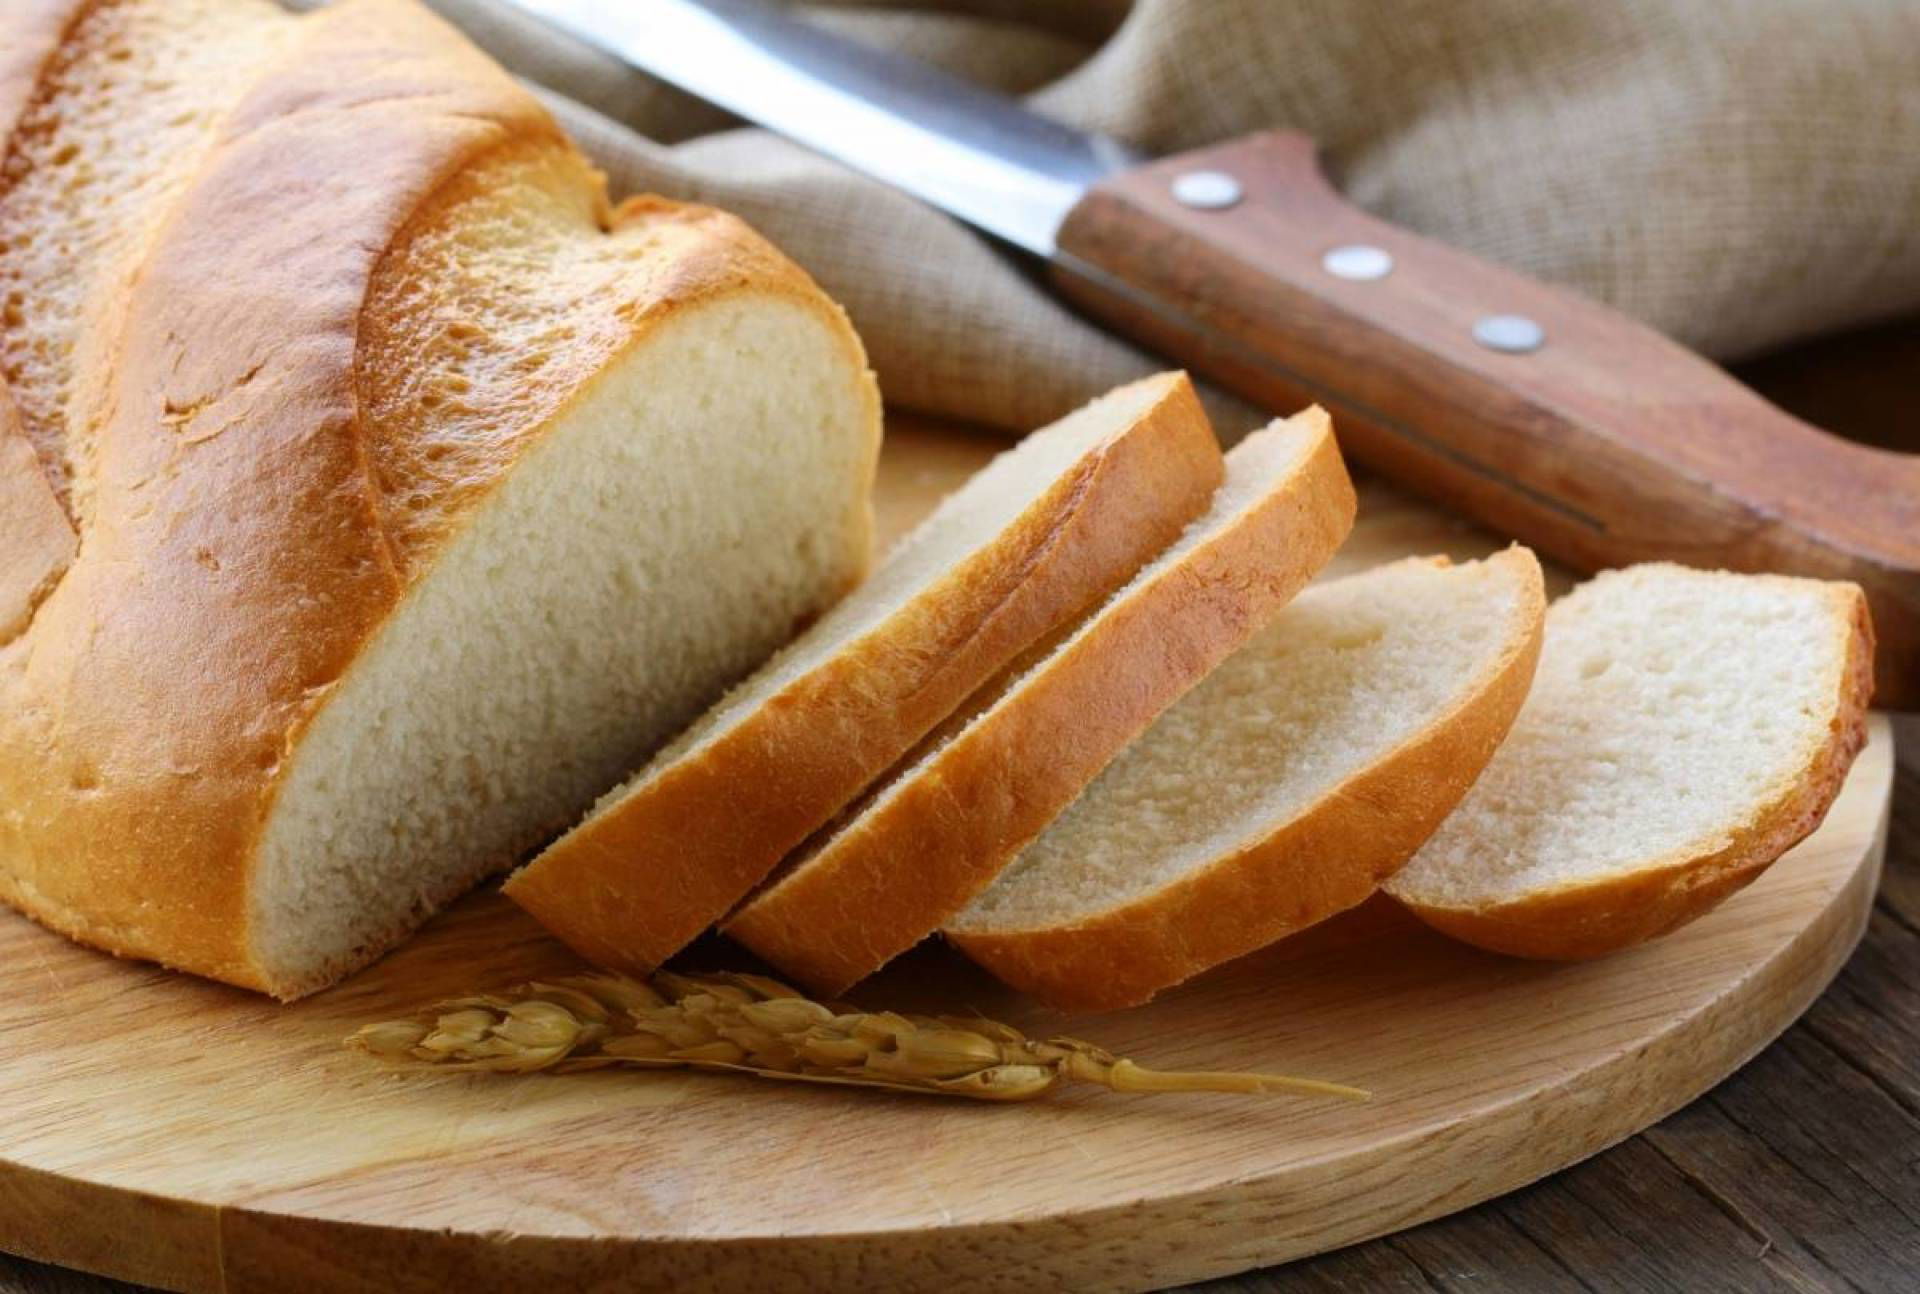 خبيرة تغذية توضح سبب كون الخبز أكثر فائدة من التفاح لفقدان الوزن